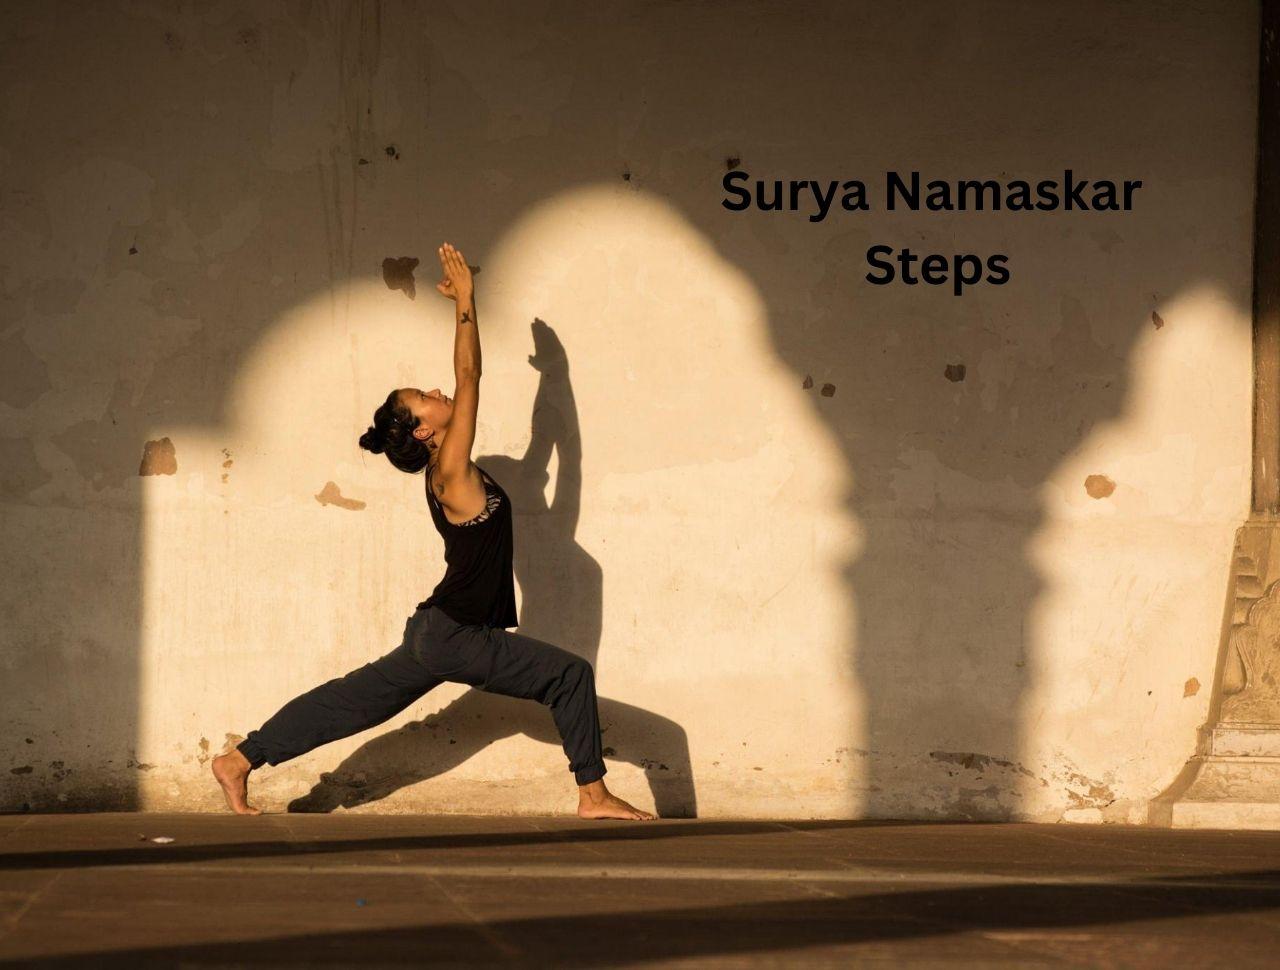 Surya Namaskar Steps: 12 Postures and Their Benefits